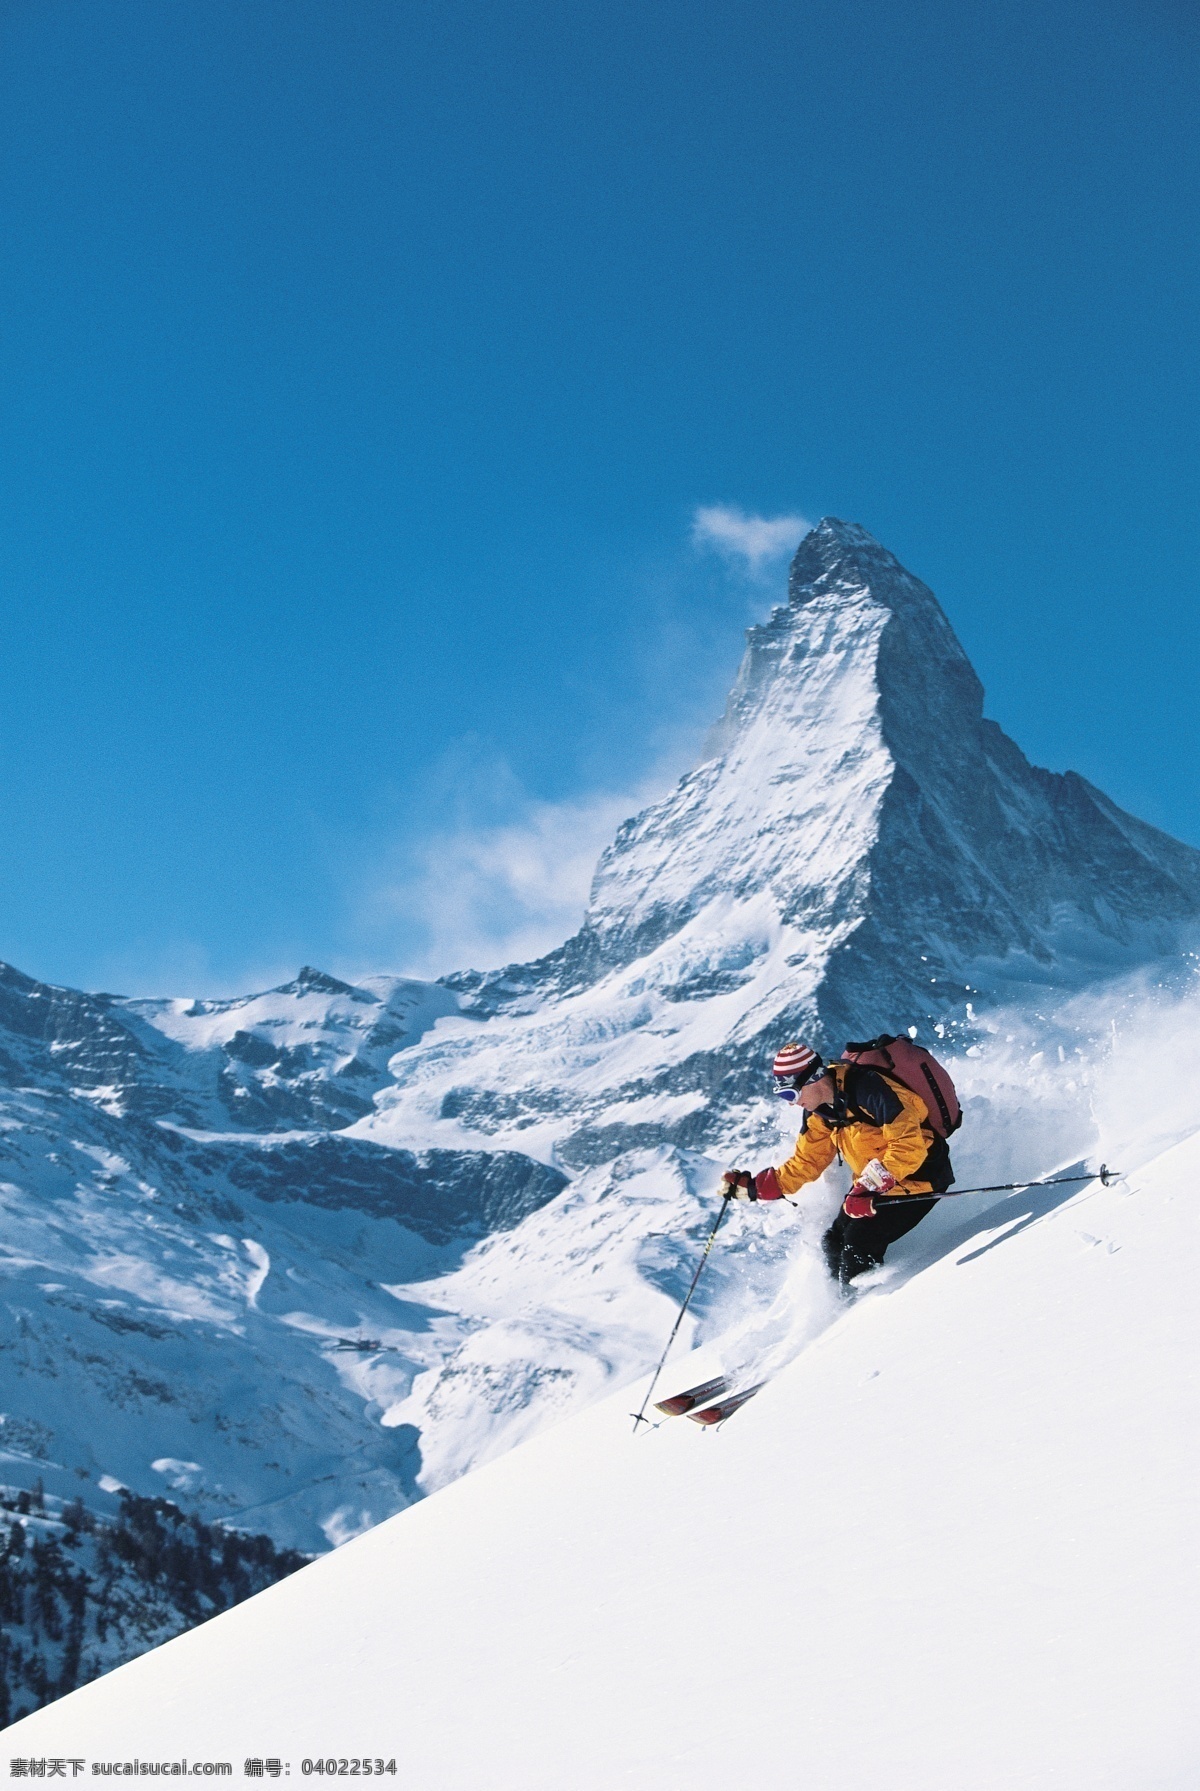 雪山 上 运动员 冬天 雪地运动 划雪运动 极限运动 体育项目 下滑 速度 运动图片 生活百科 美丽 雪景 风景 摄影图片 高清图片 体育运动